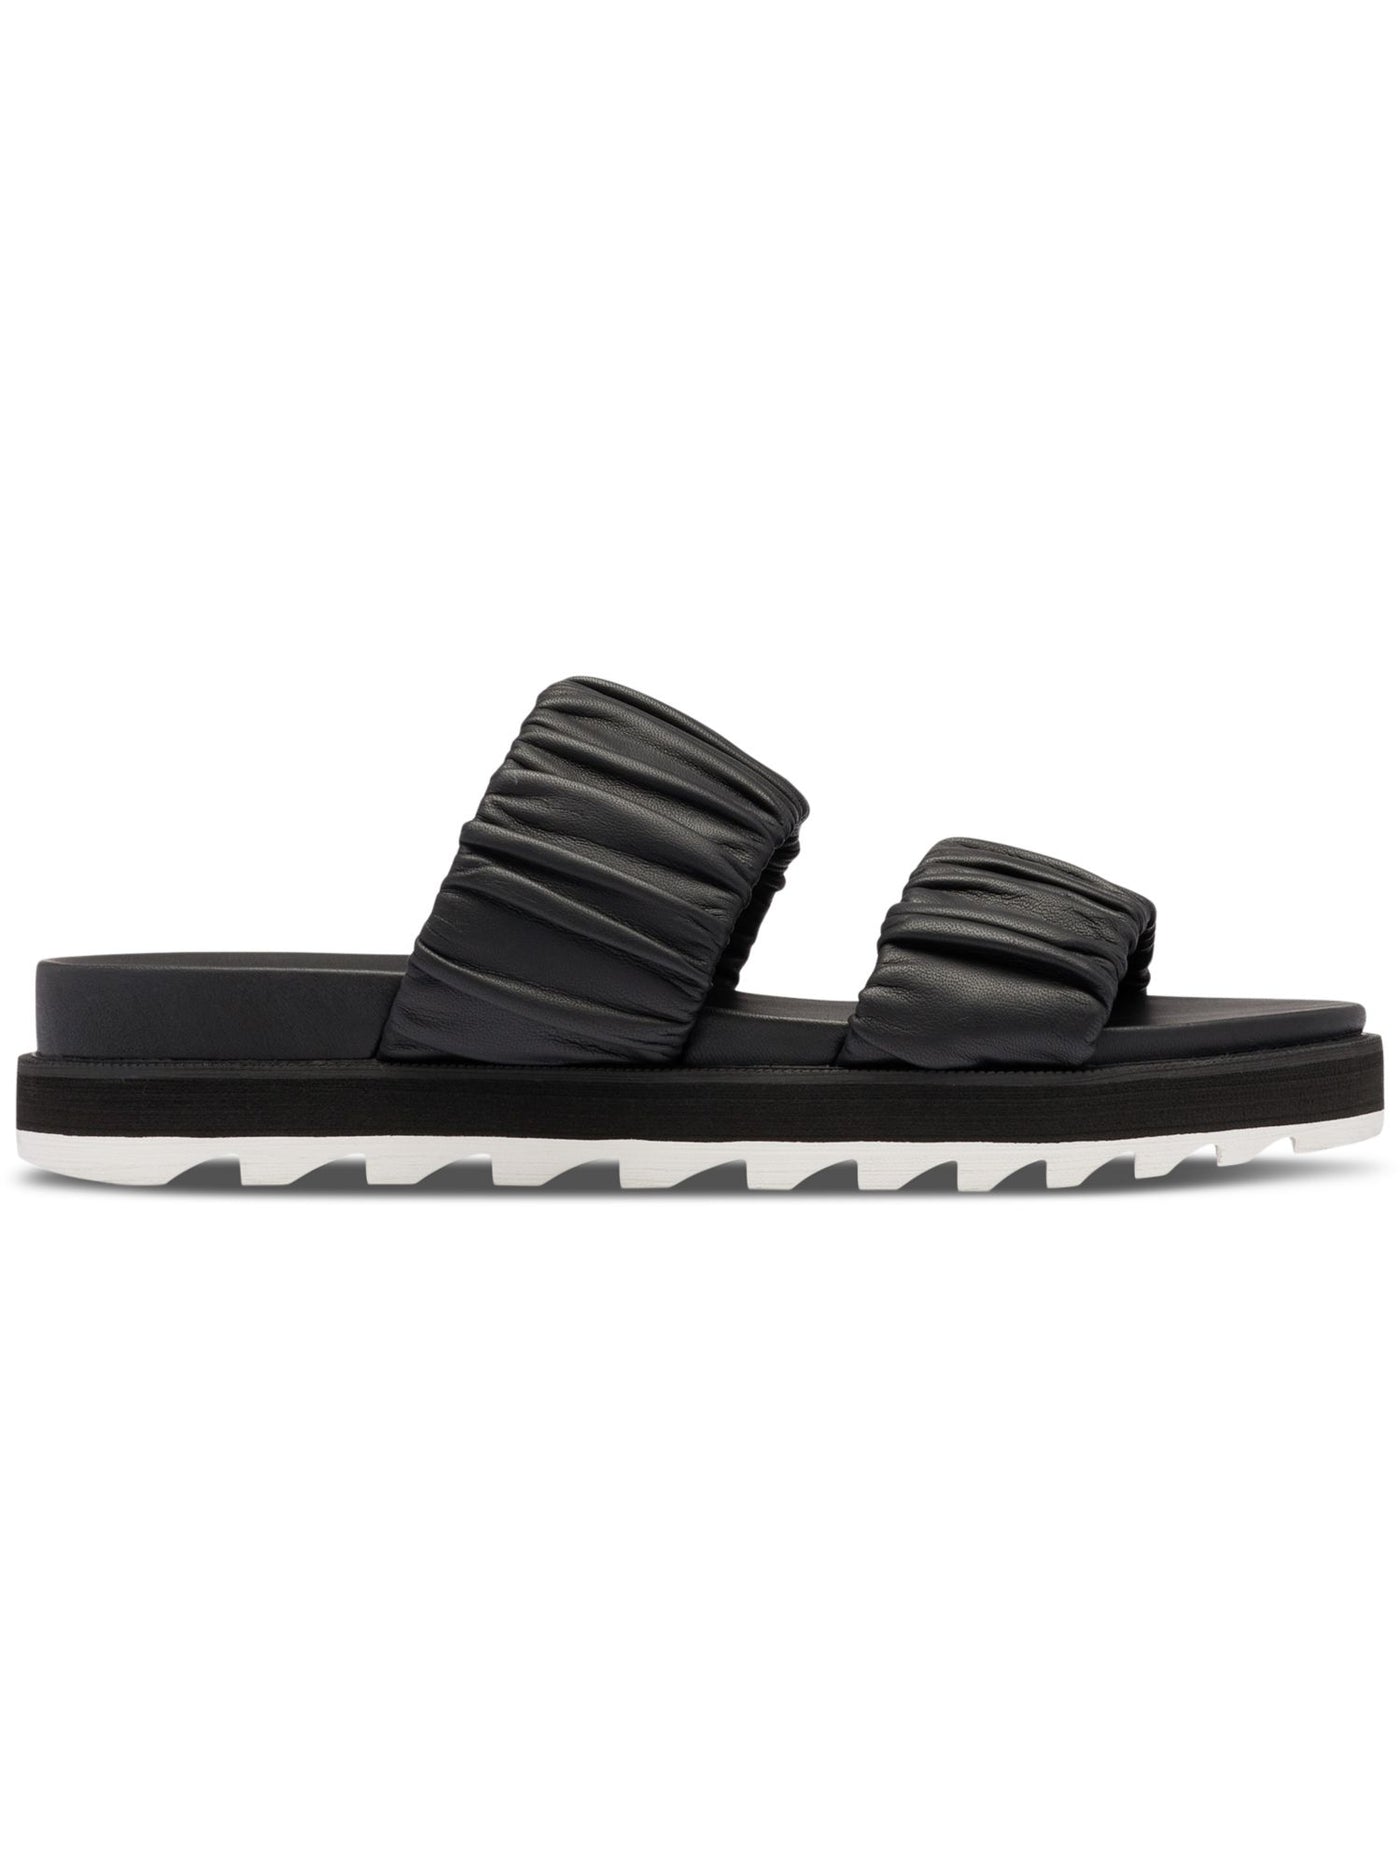 SOREL Mens Black 1 Sawtooth Platform Ruched Roaming Round Toe Wedge Slip On Leather Slide Sandals Shoes 9.5